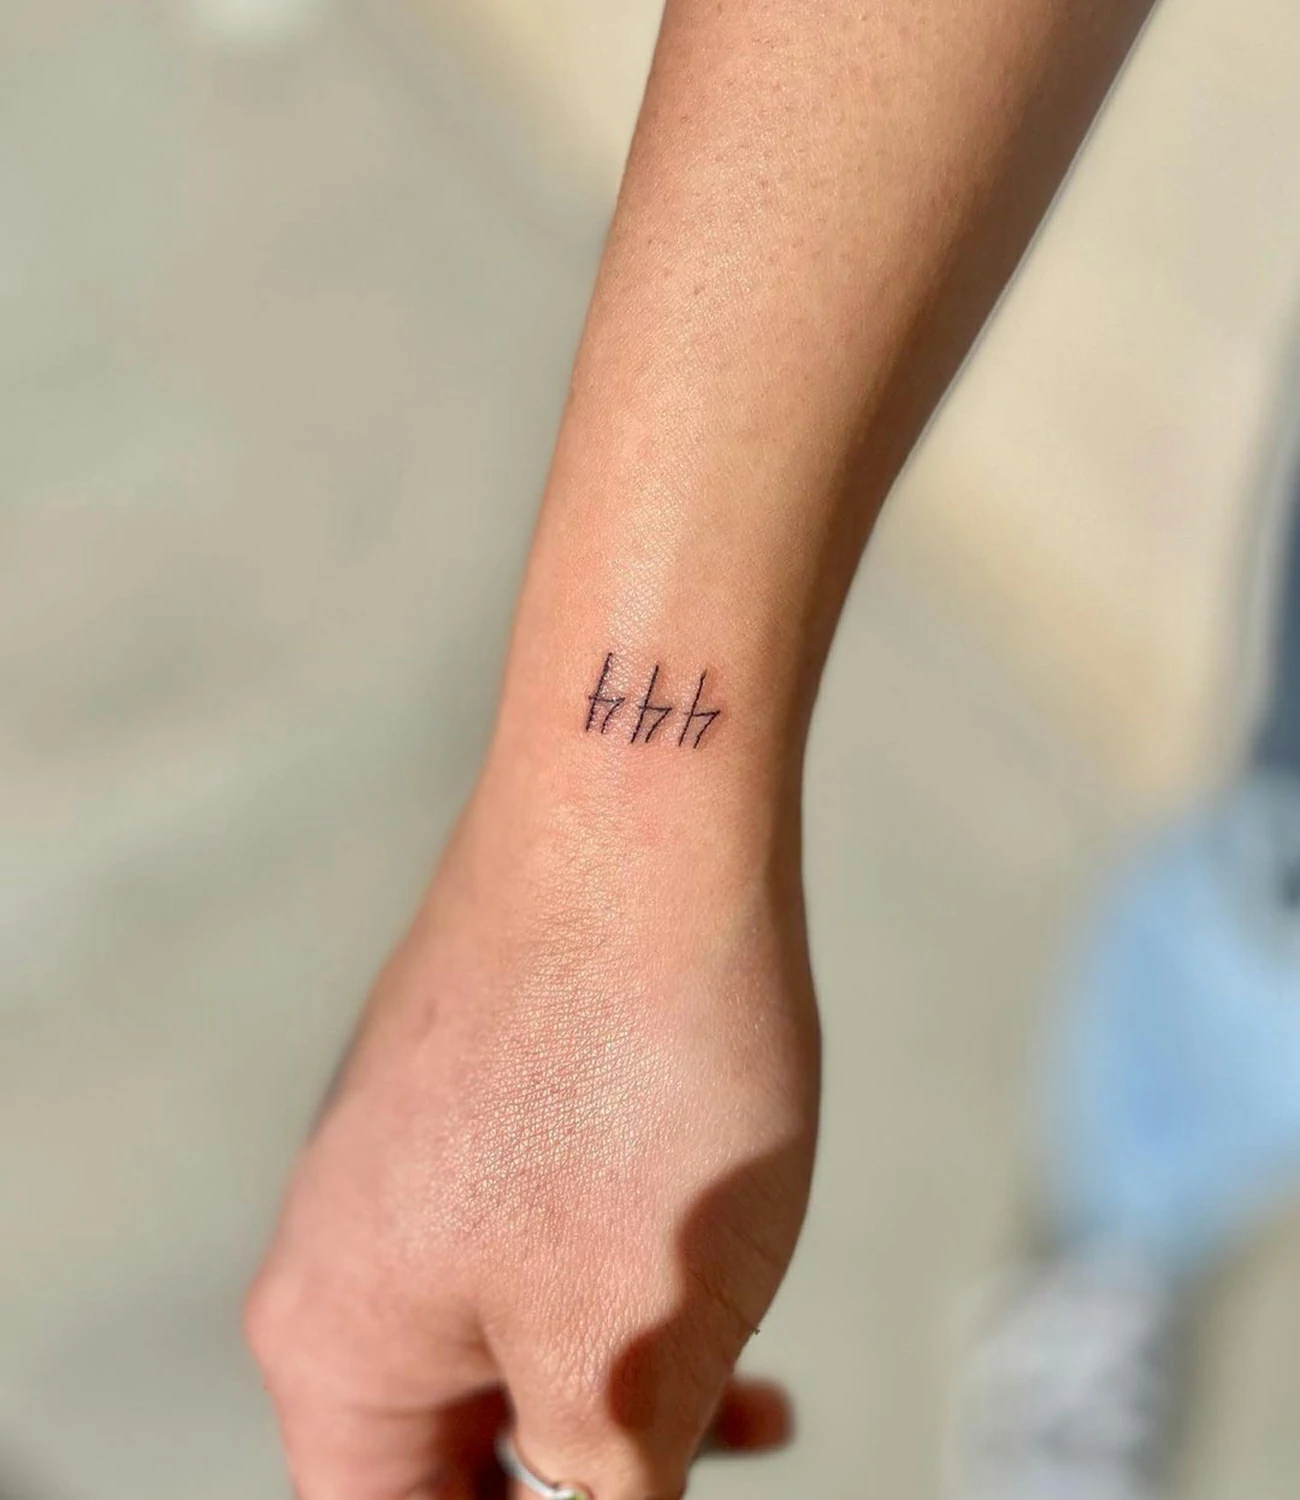 444 Tattoo on Wrist